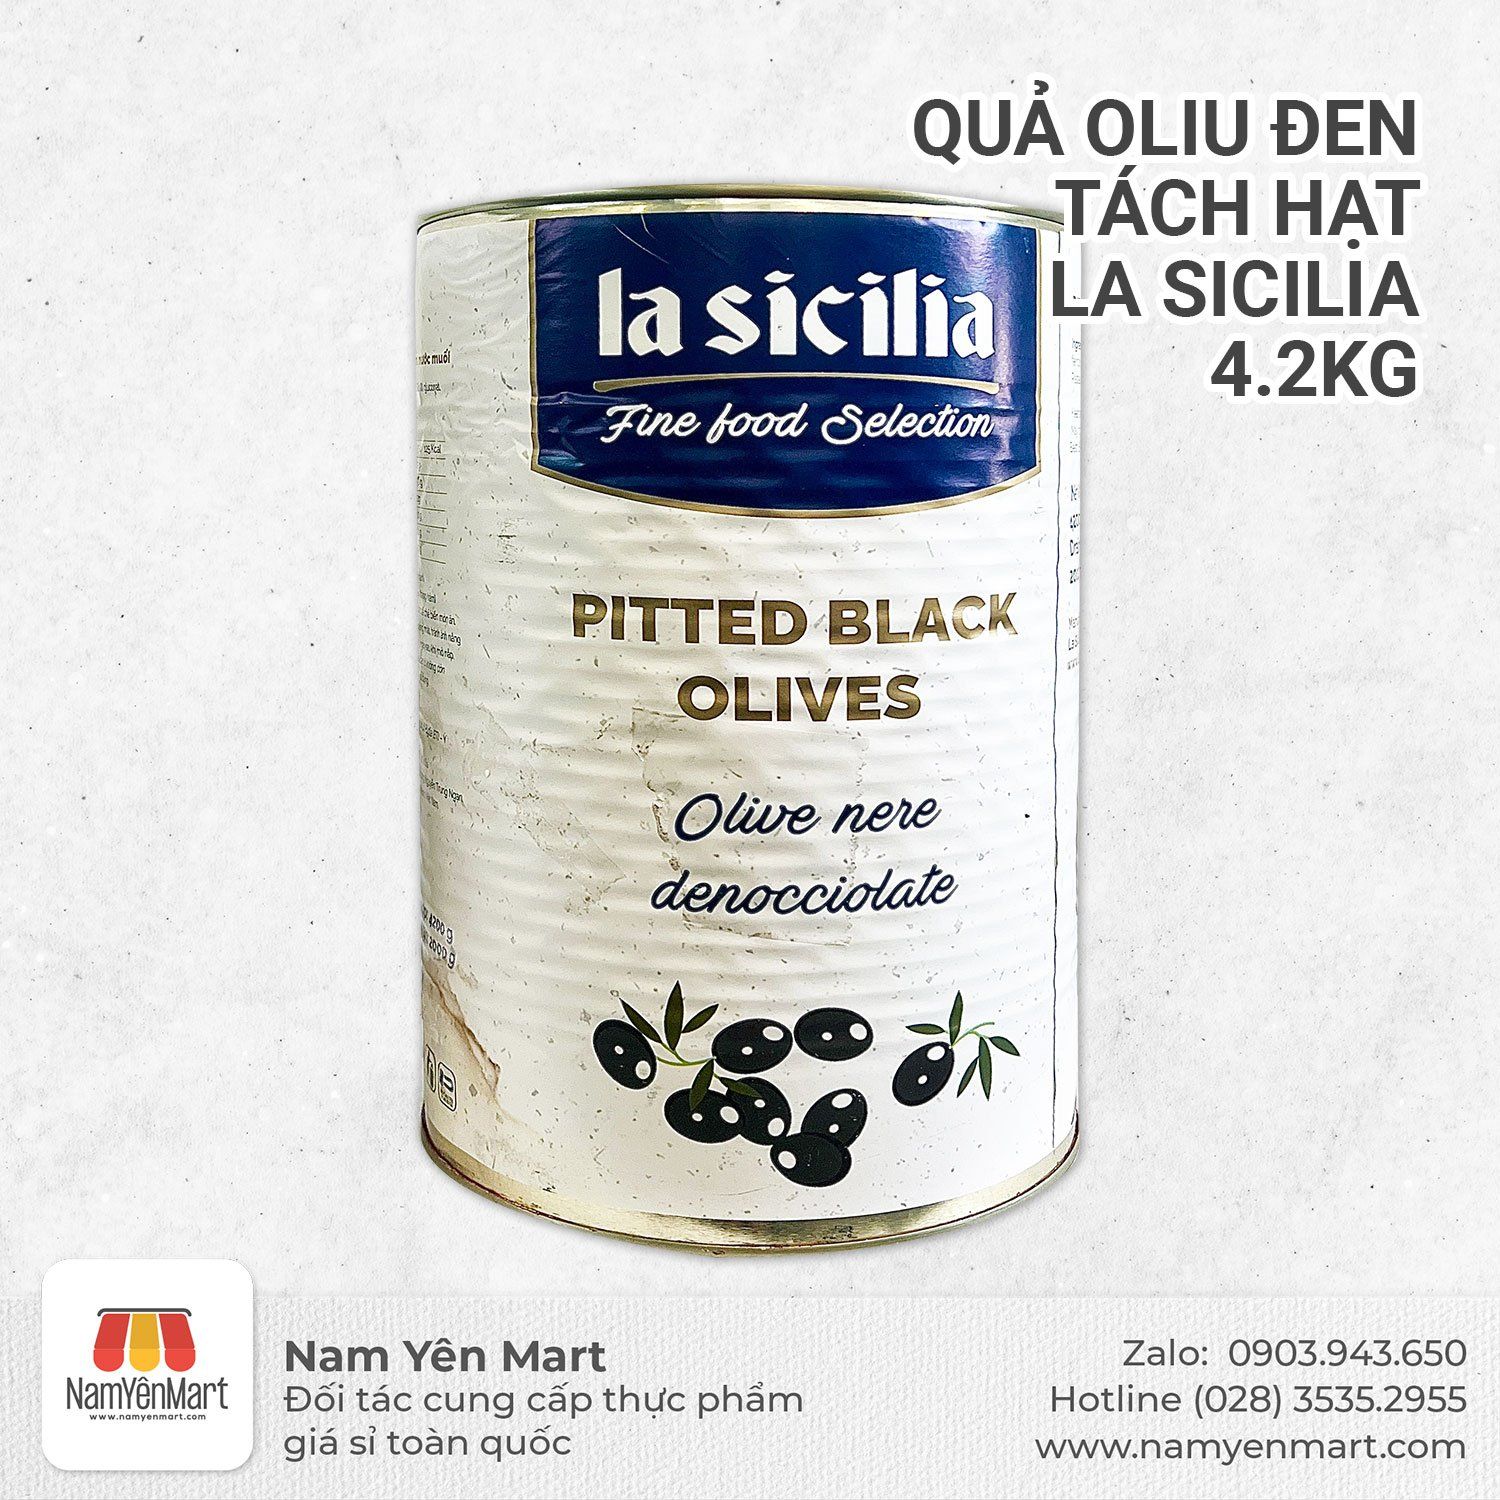  Quả Oliu Đen Tách Hạt La Sicilia 4.2KG 